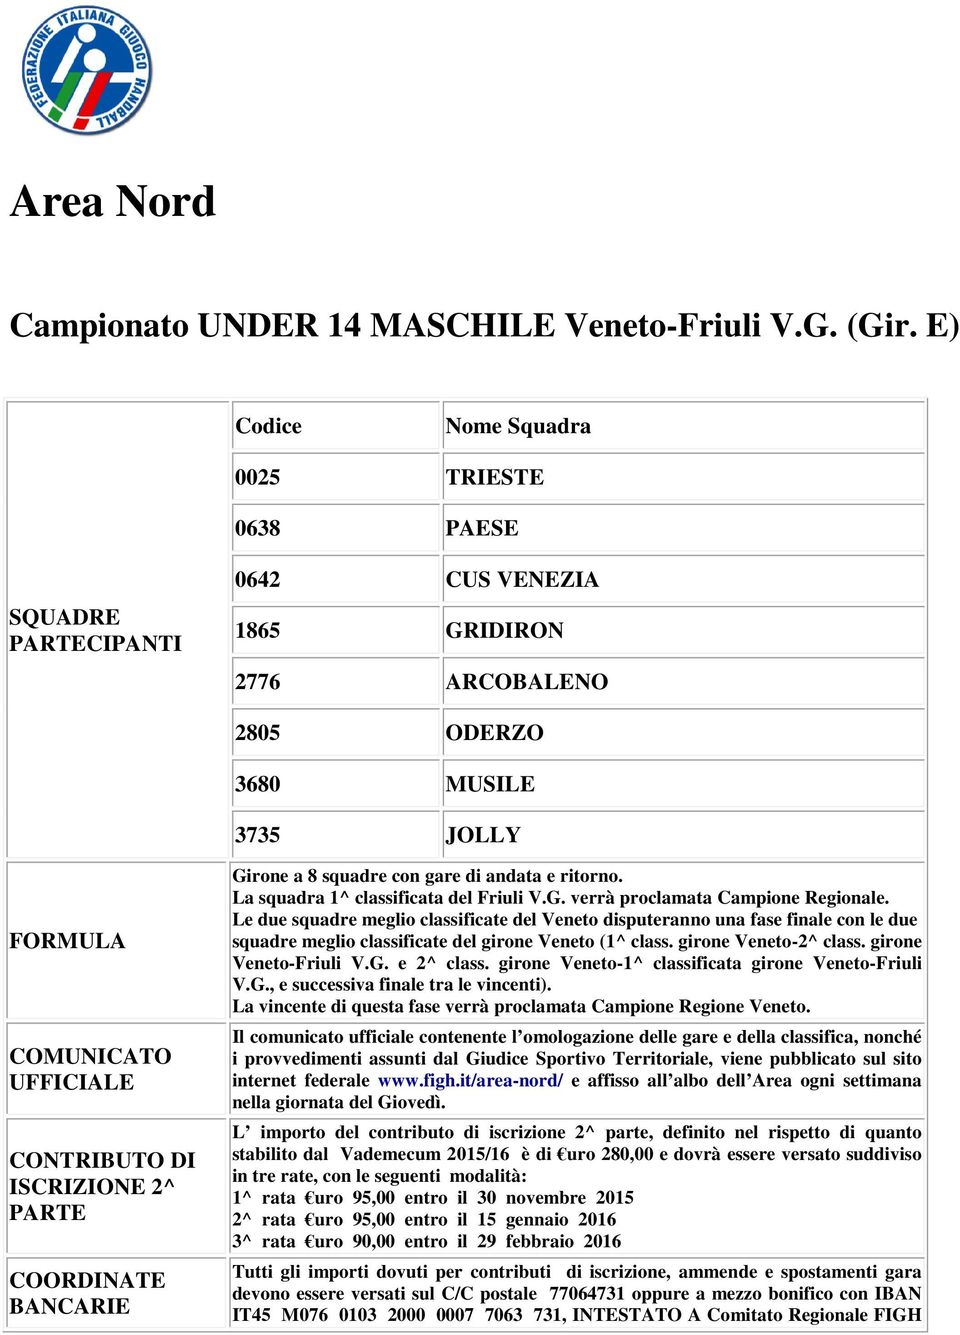 ISCRIZIONE 2^ PARTE COORDINATE BANCARIE Girone a 8 squadre con gare di andata e ritorno. La squadra 1^ classificata del Friuli V.G. verrà proclamata Campione Regionale.